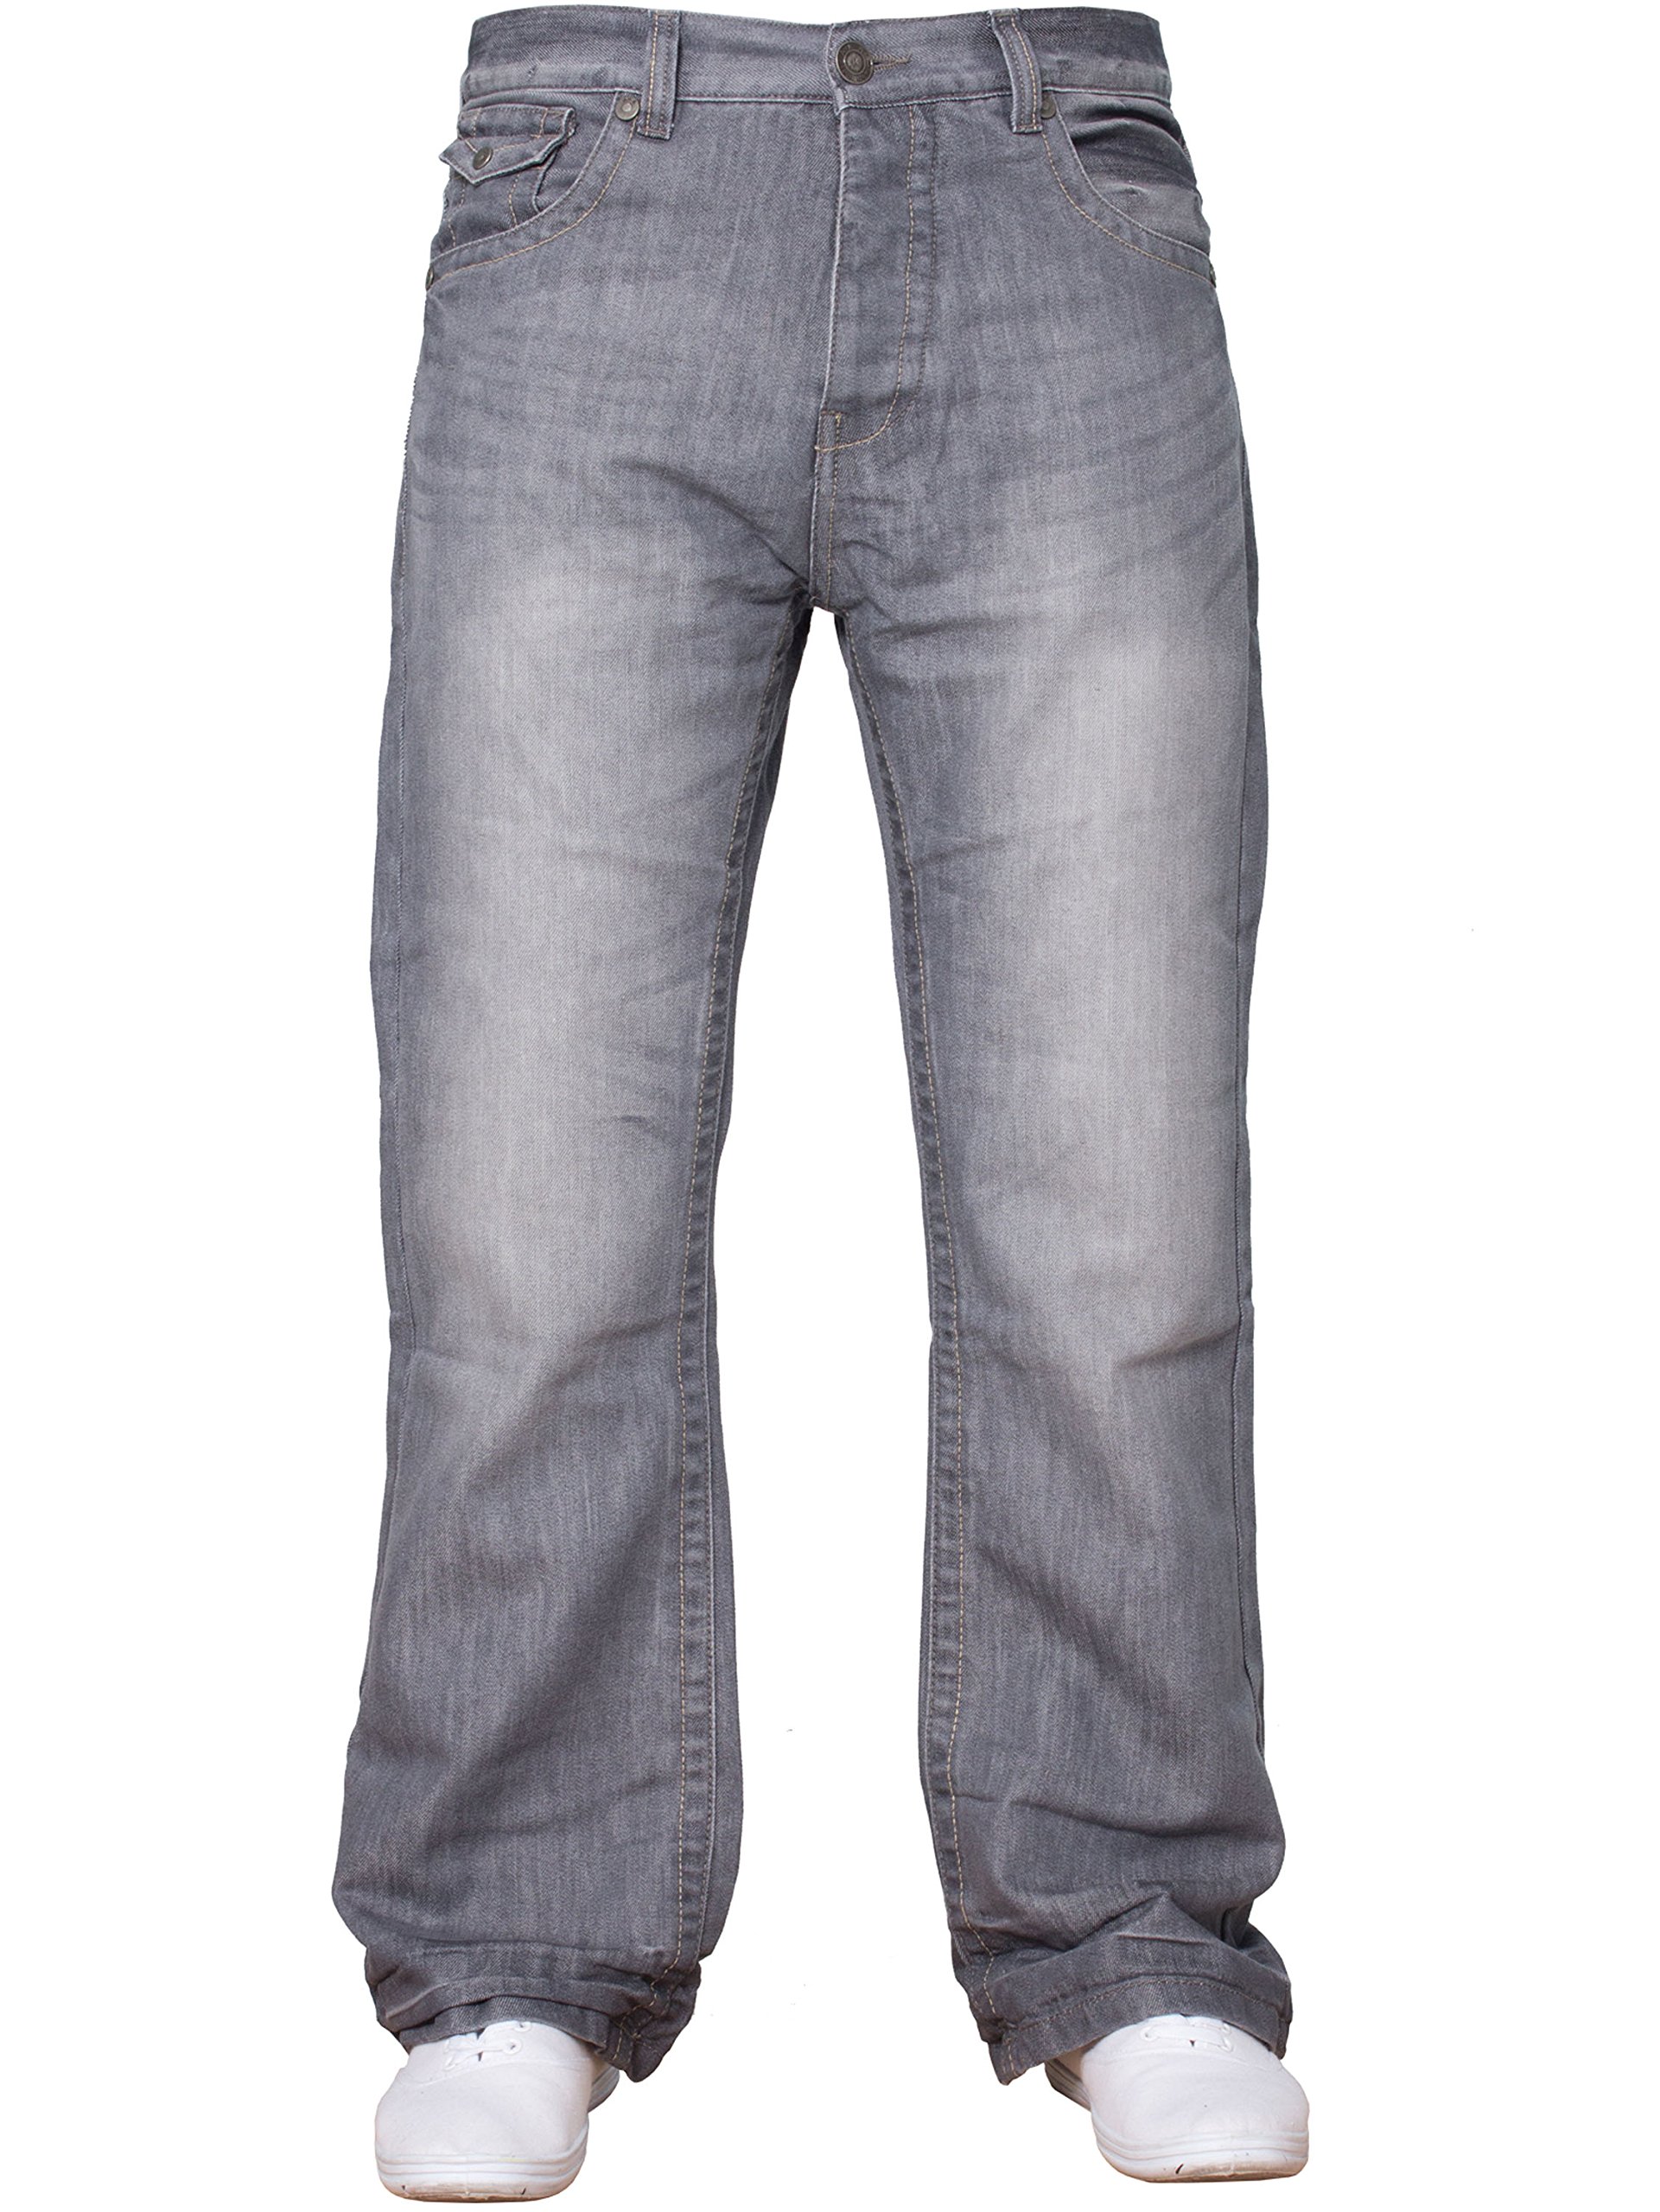 APT Herren einfach blau Bootcut weites Bein ausgestellt Works Freizeit Jeans Große Größen in 3 Farben erhältlich - grau, 34W x 30L